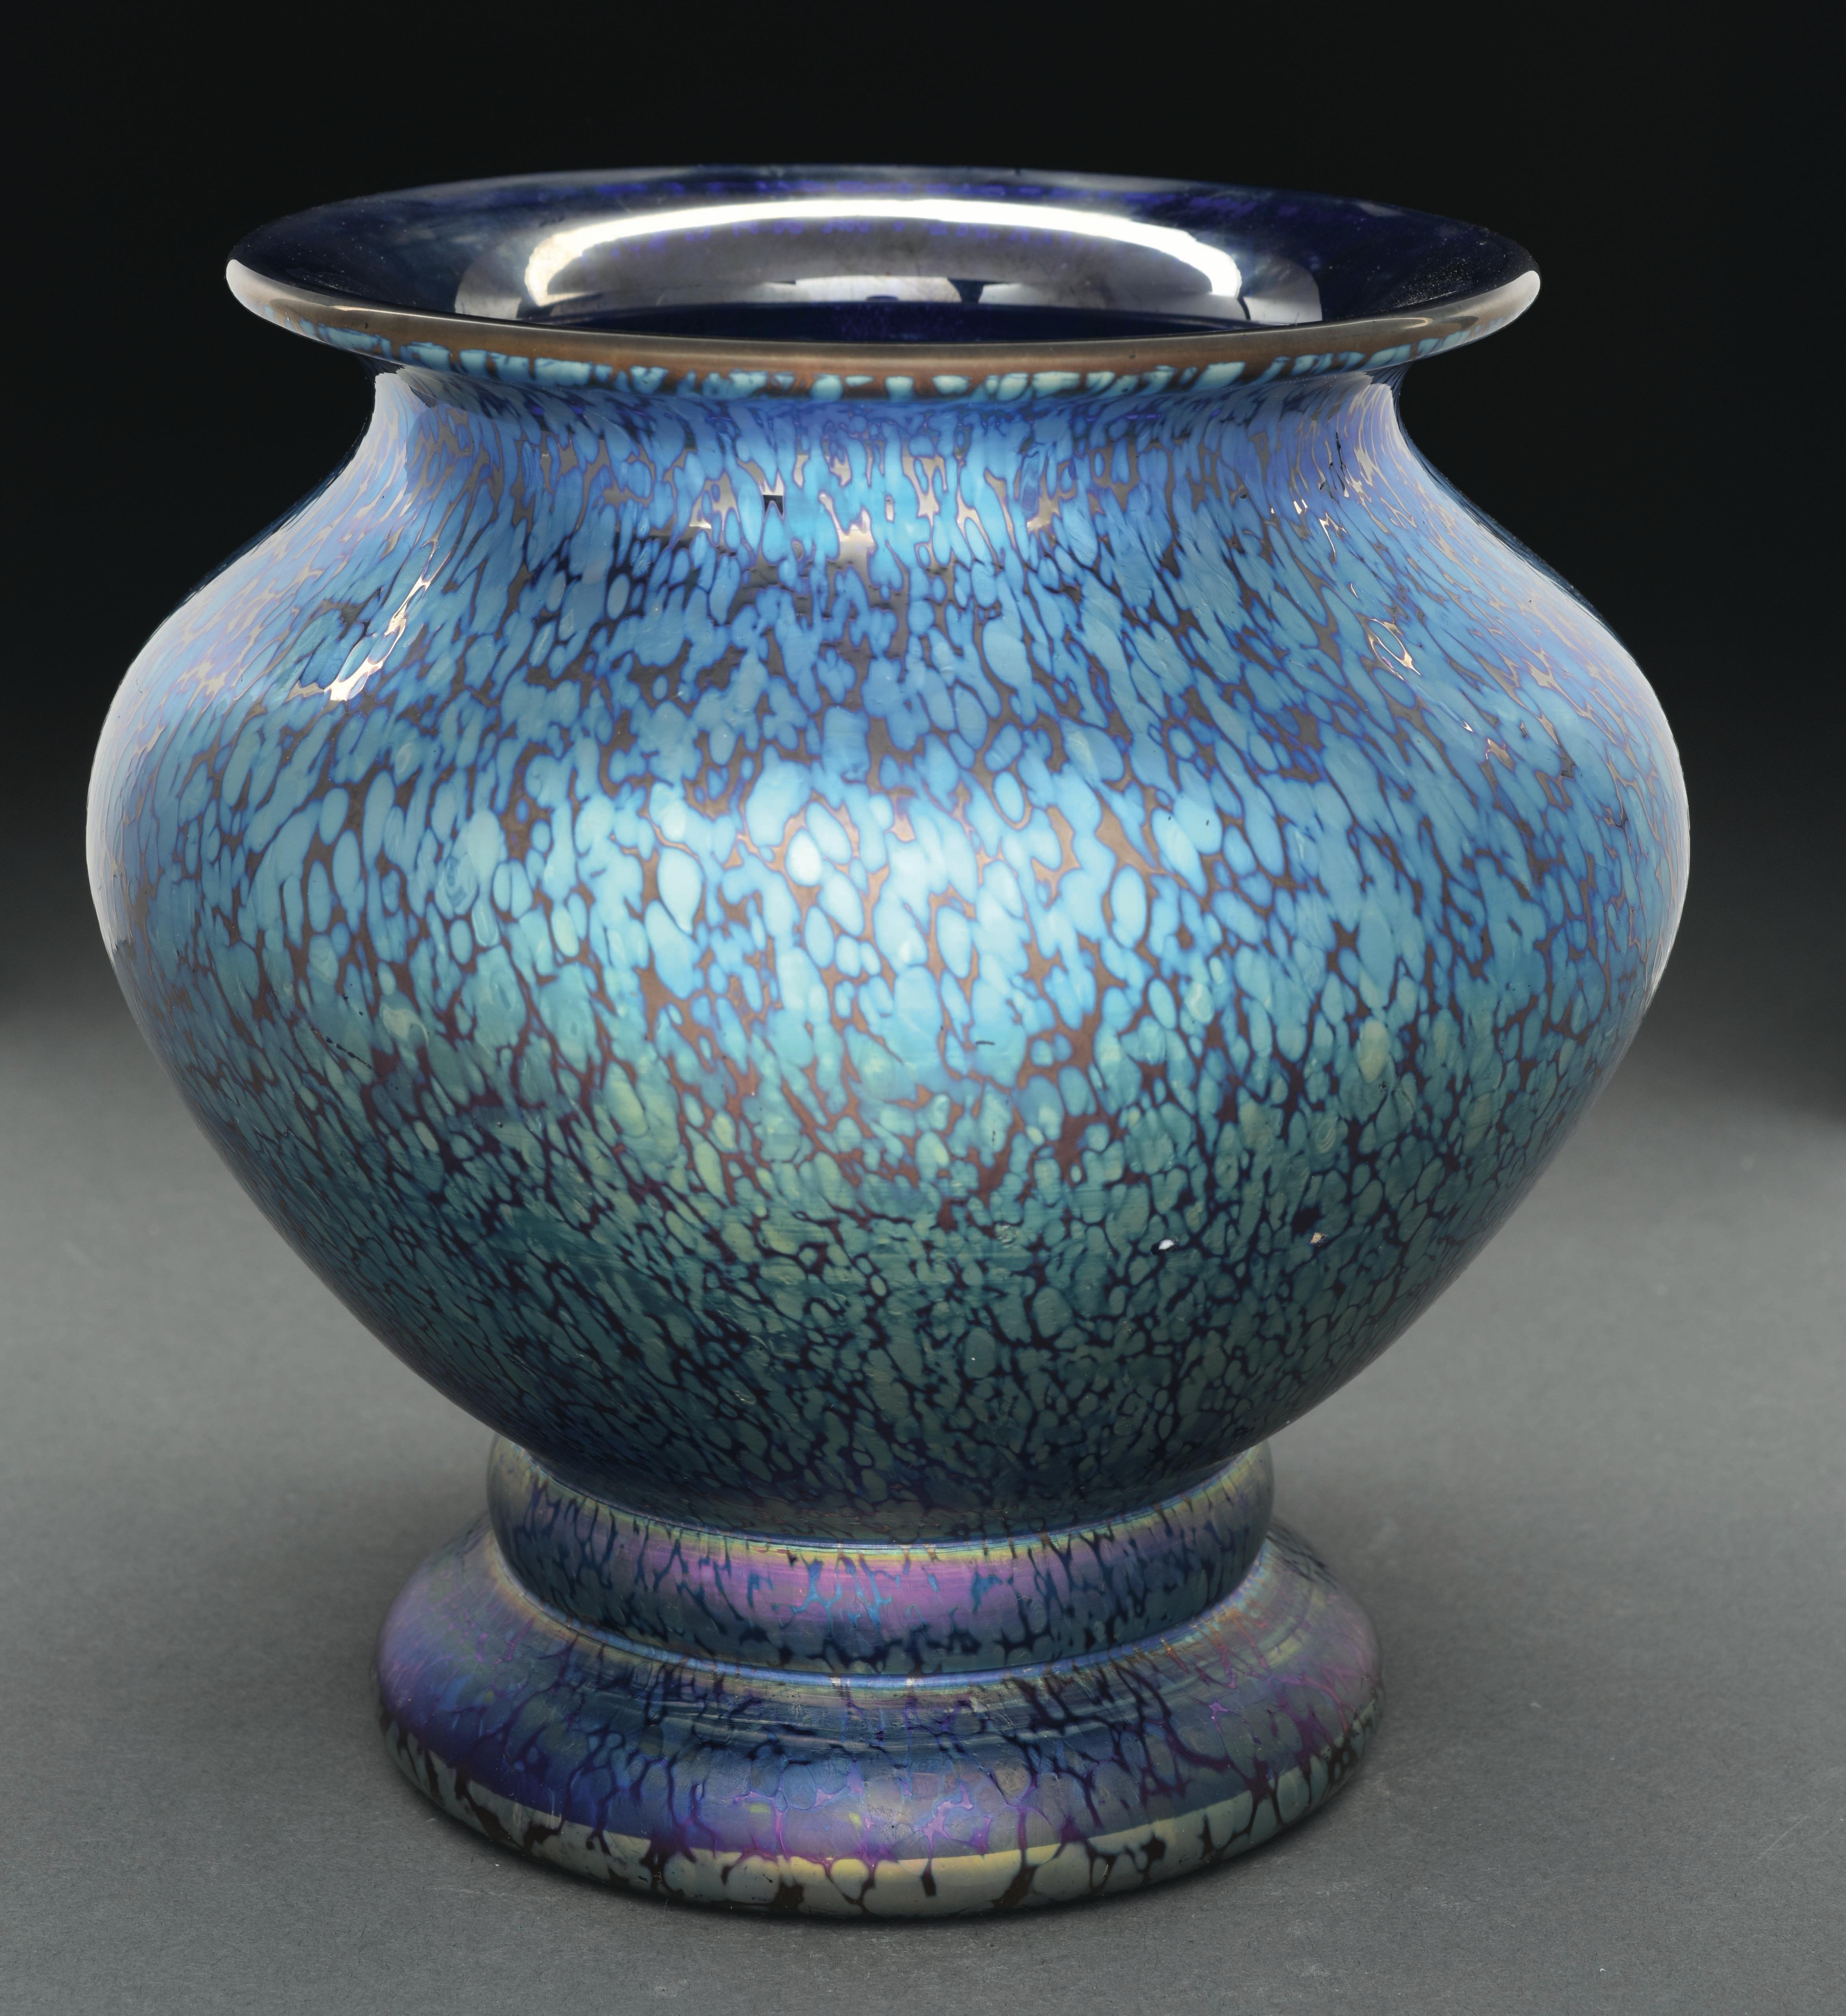 Ce vase Loetz au motif Cobalt Papillon est orné d'un motif Papillon bleu irisé qui recouvre l'extérieur du vase. 

Le vase est signé sur le pontil poli 